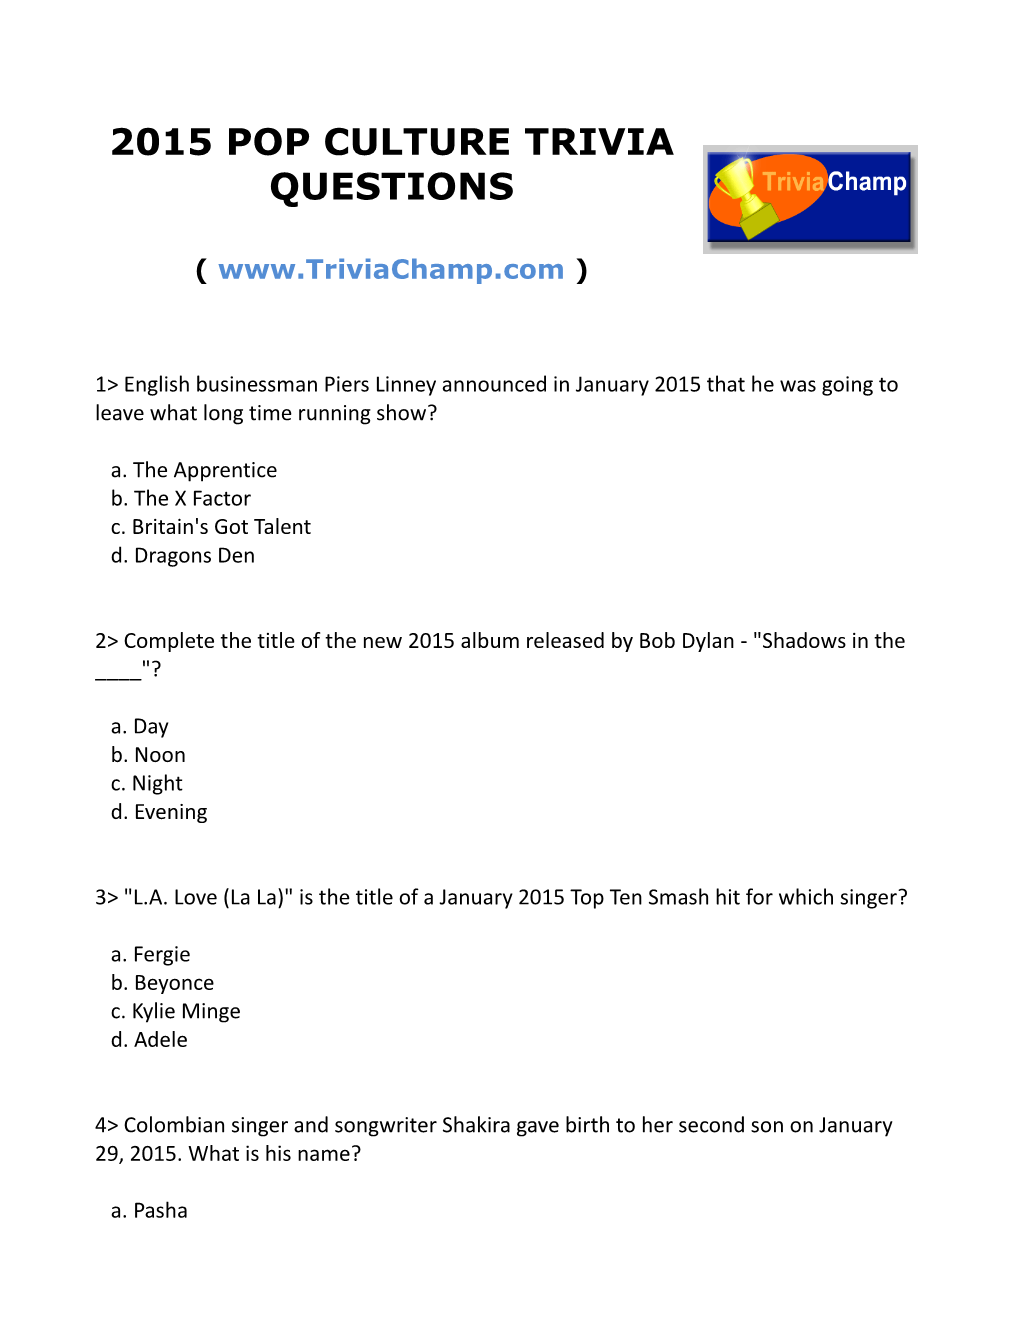 2015 Pop Culture Trivia Questions